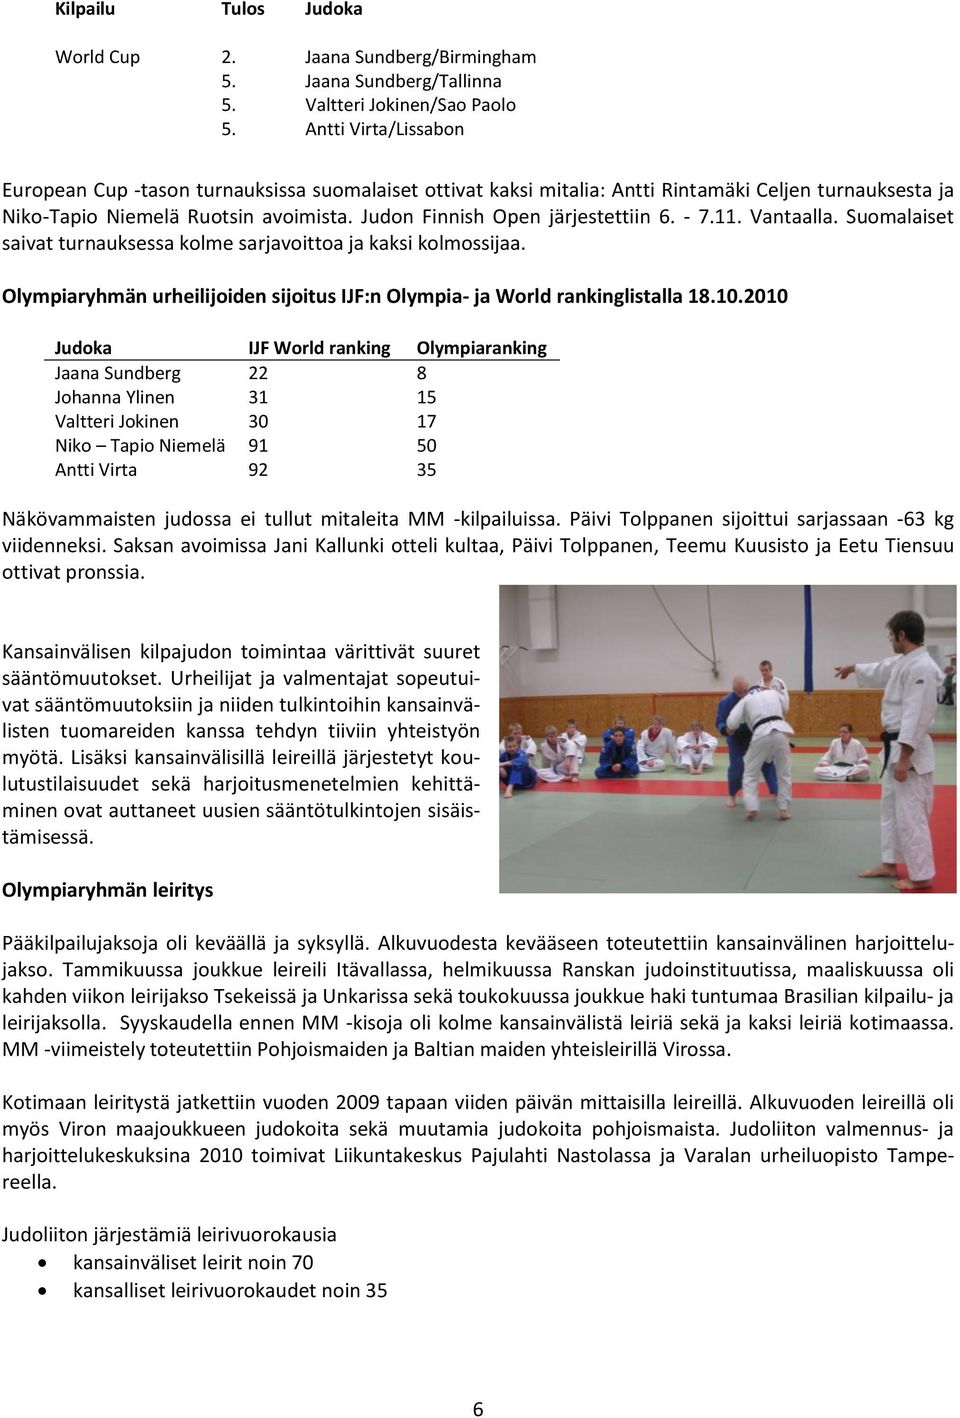 turnauksesta ja Niko-Tapio Niemelä Ruotsin avoimista. Judon Finnish Open järjestettiin 6. - 7.11. Vantaalla. Suomalaiset saivat turnauksessa kolme sarjavoittoa ja kaksi kolmossijaa.